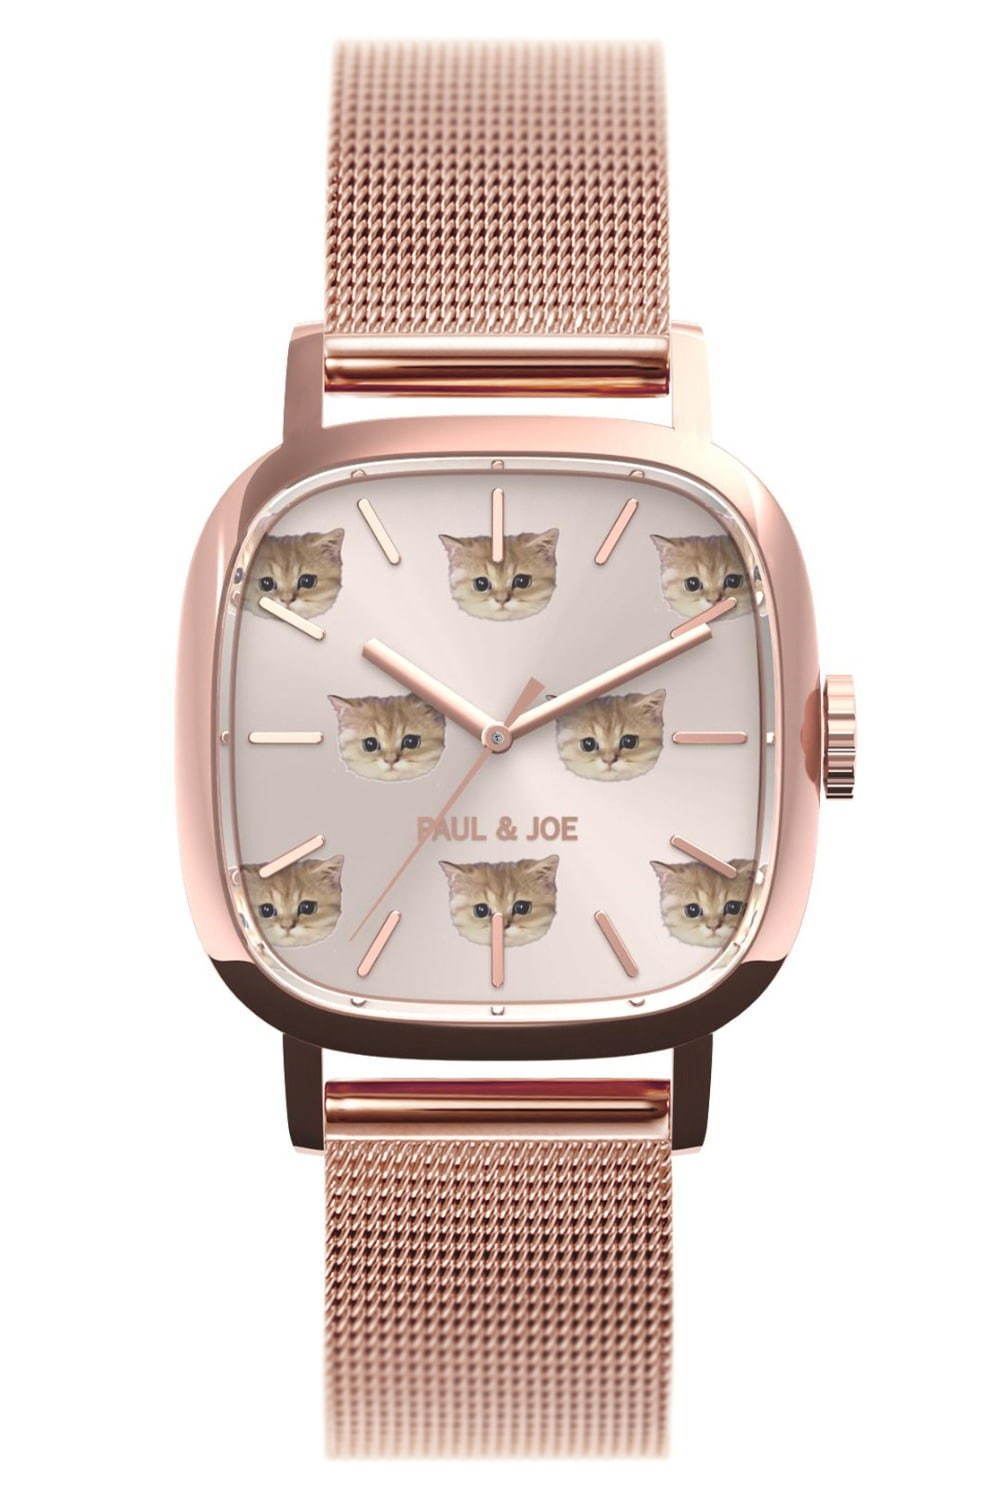 ポール & ジョー“猫”モチーフの限定腕時計「スクエア ヌネット」猫の顔 ...